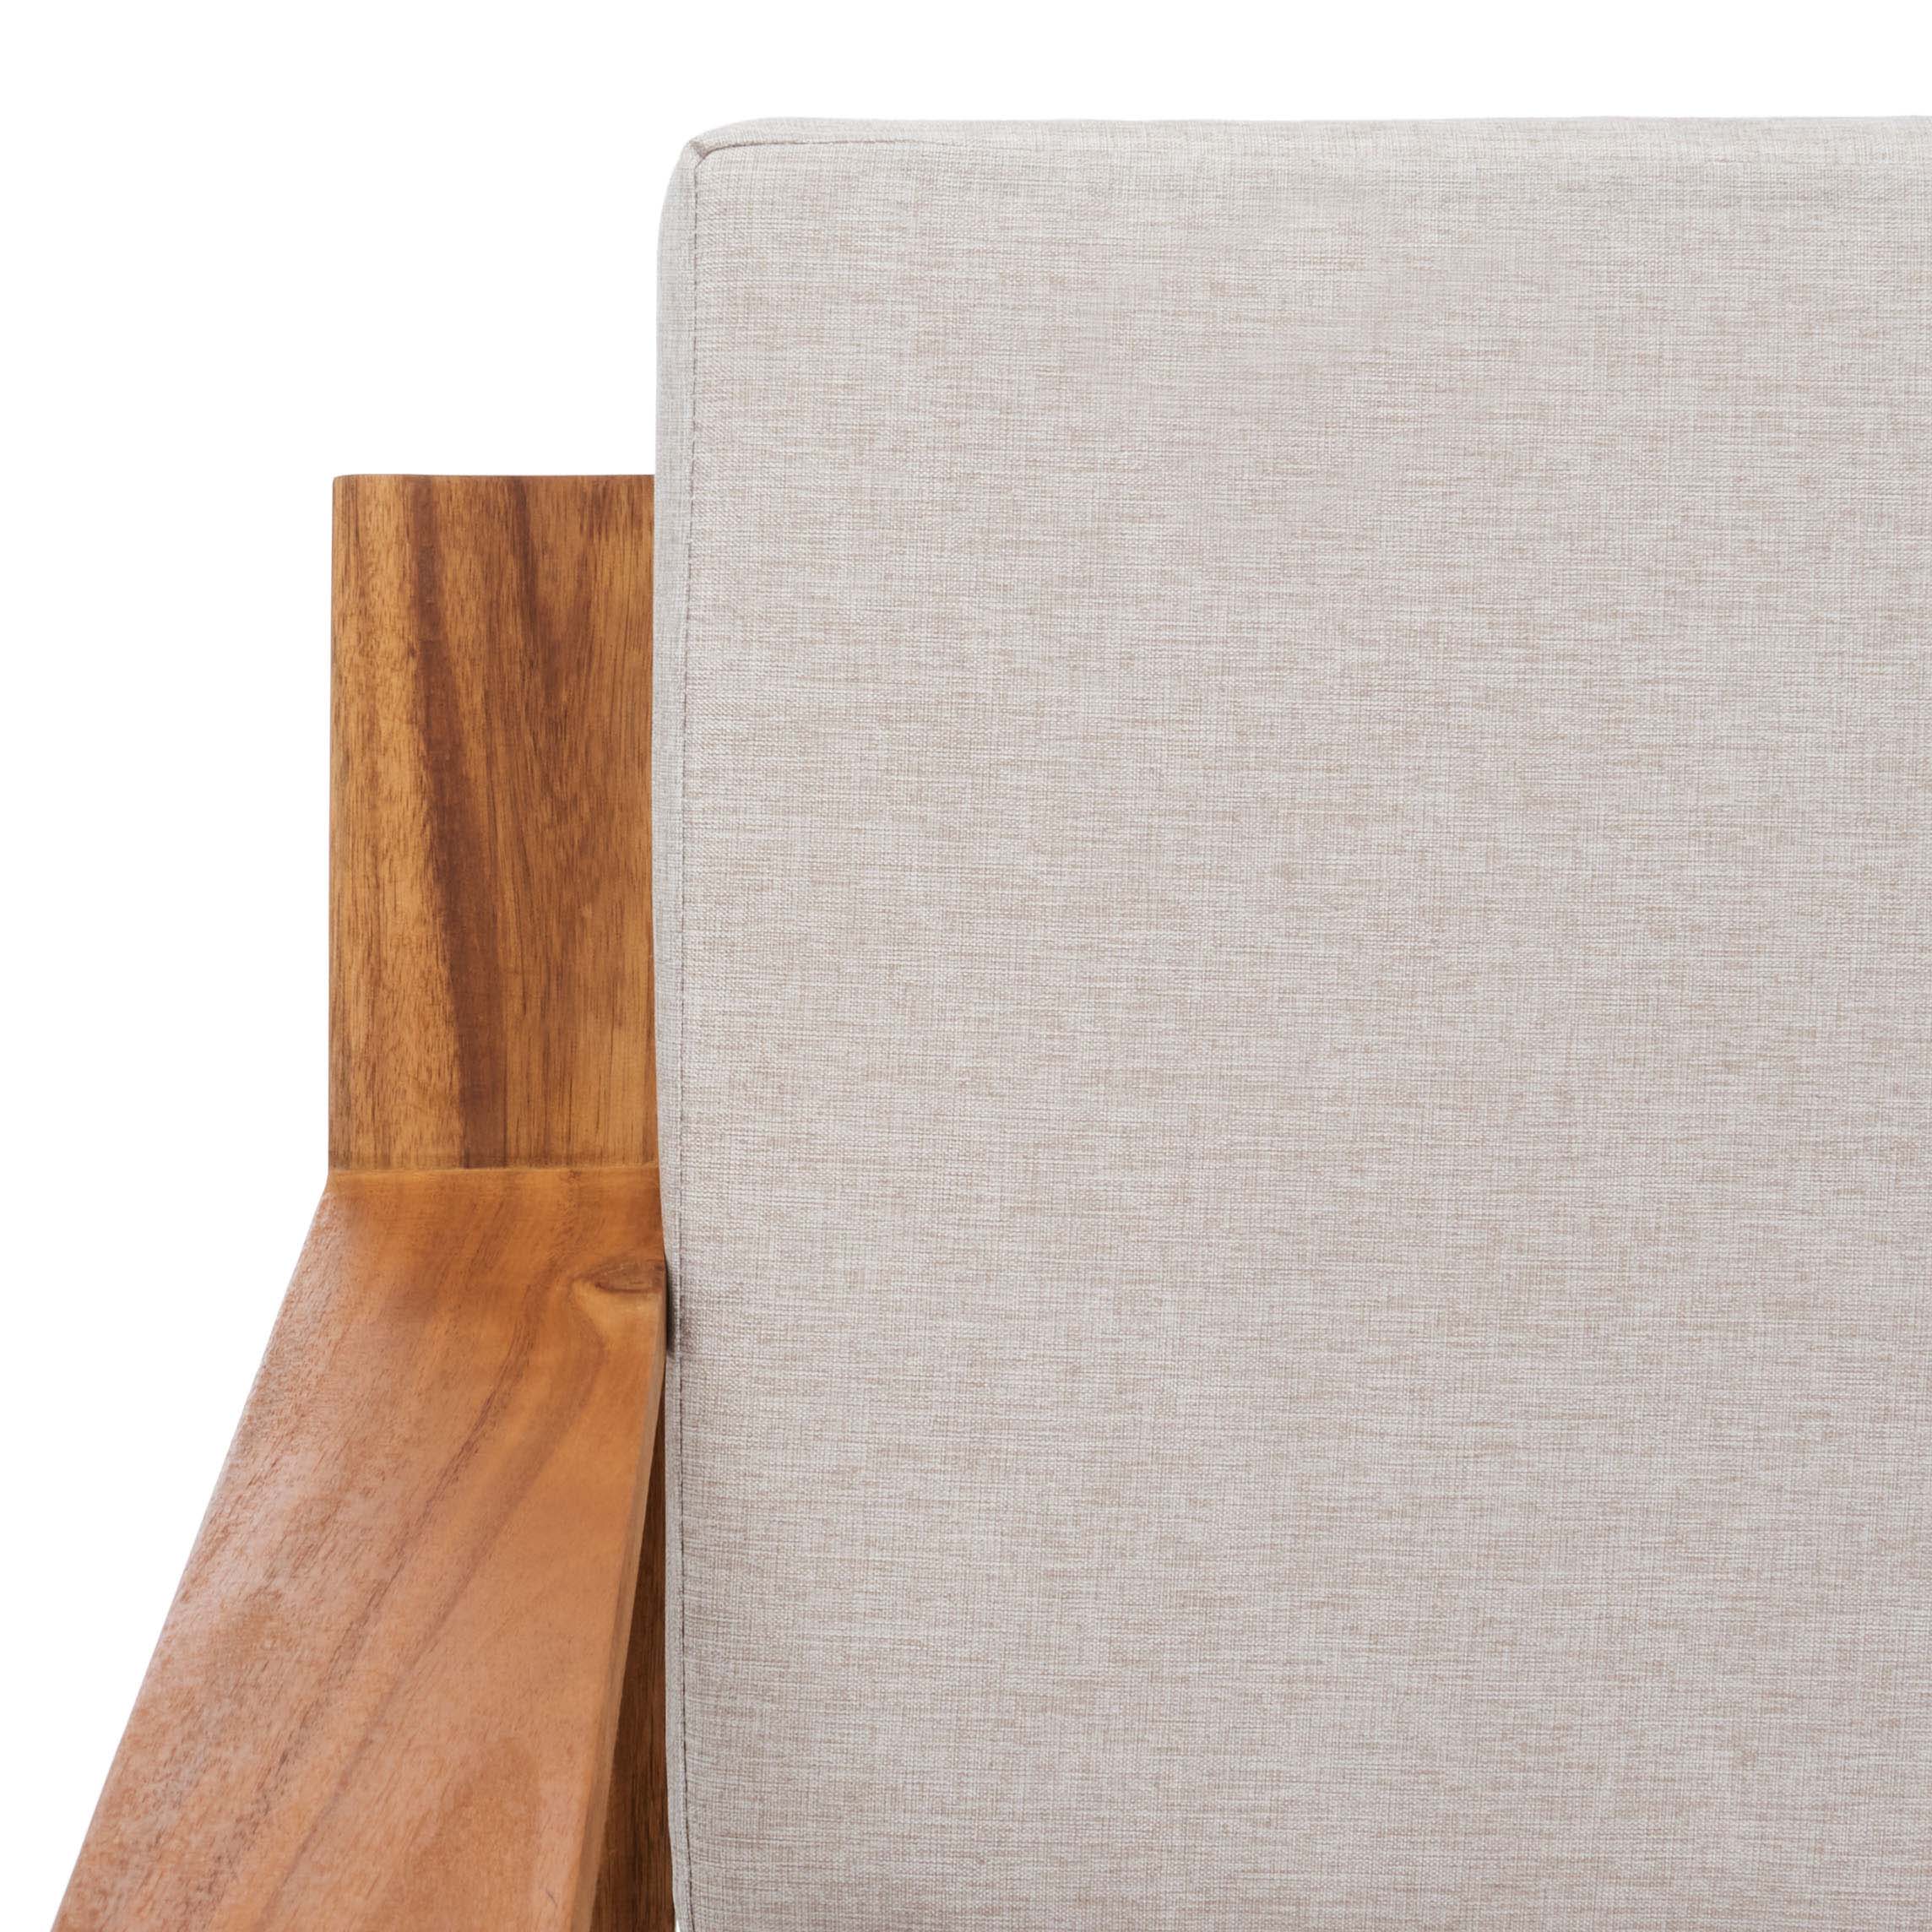 Natural Wood/Light Grey Cushion